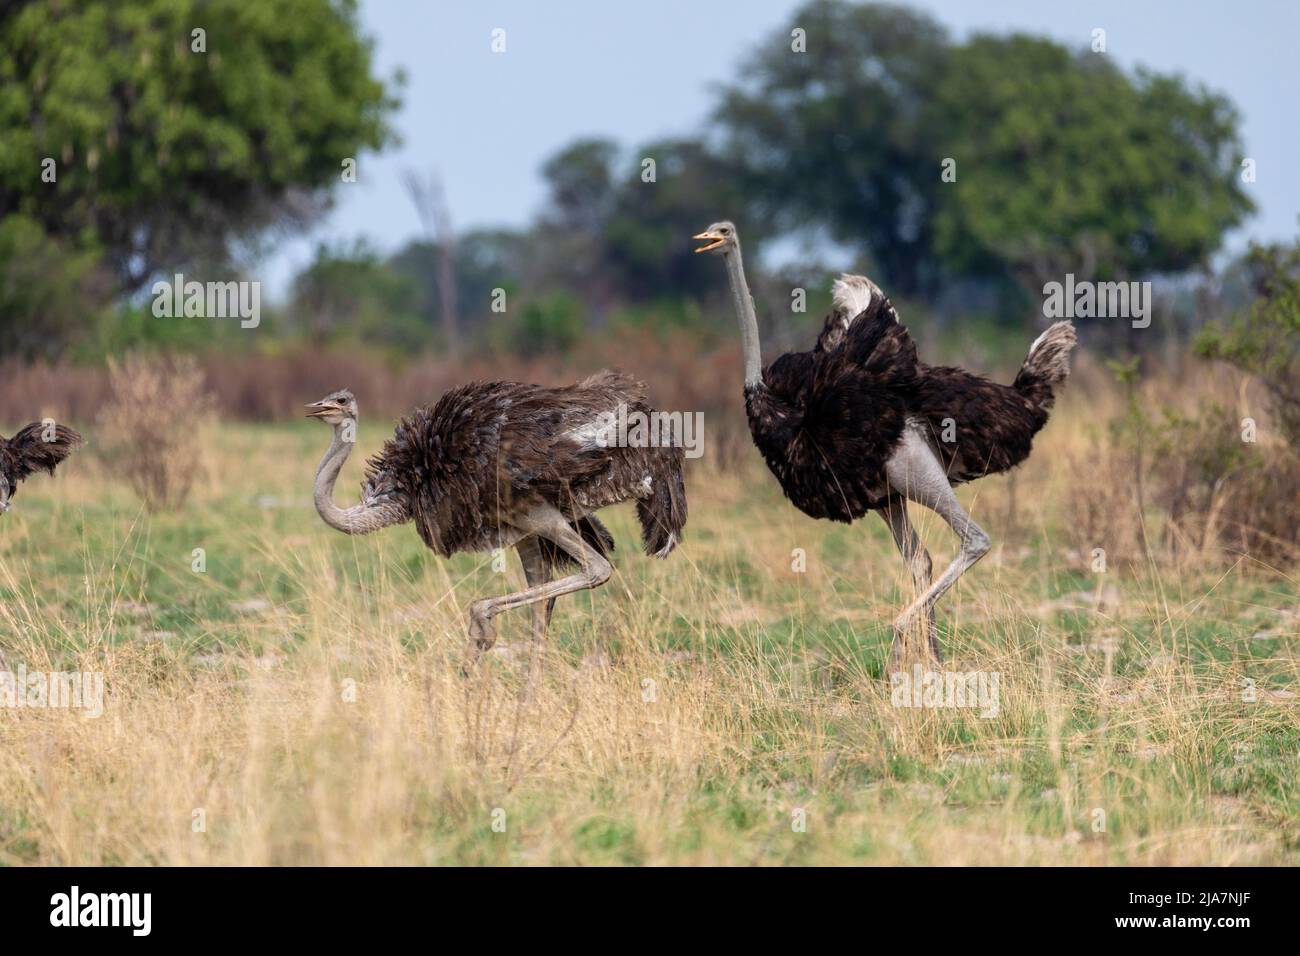 Ostriches of the Okavango Delta grassland, Botswana Stock Photo